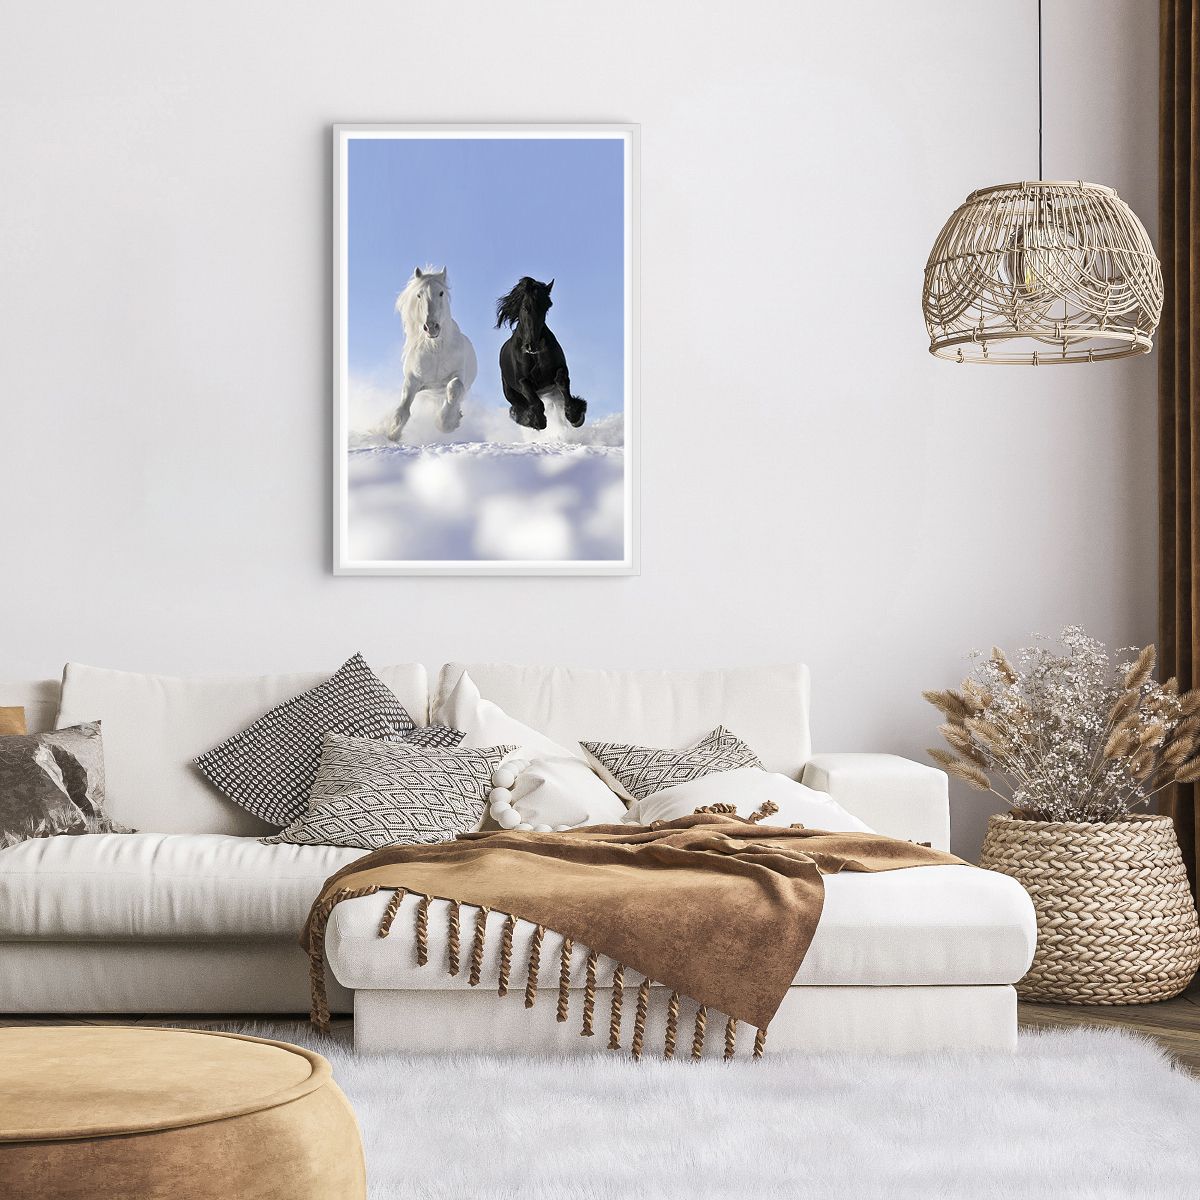 Poster in einem weißen Rahmen Tiere, Poster in einem weißen Rahmen Pferd, Poster in einem weißen Rahmen Winter, Poster in einem weißen Rahmen Natur, Poster in einem weißen Rahmen Galopp